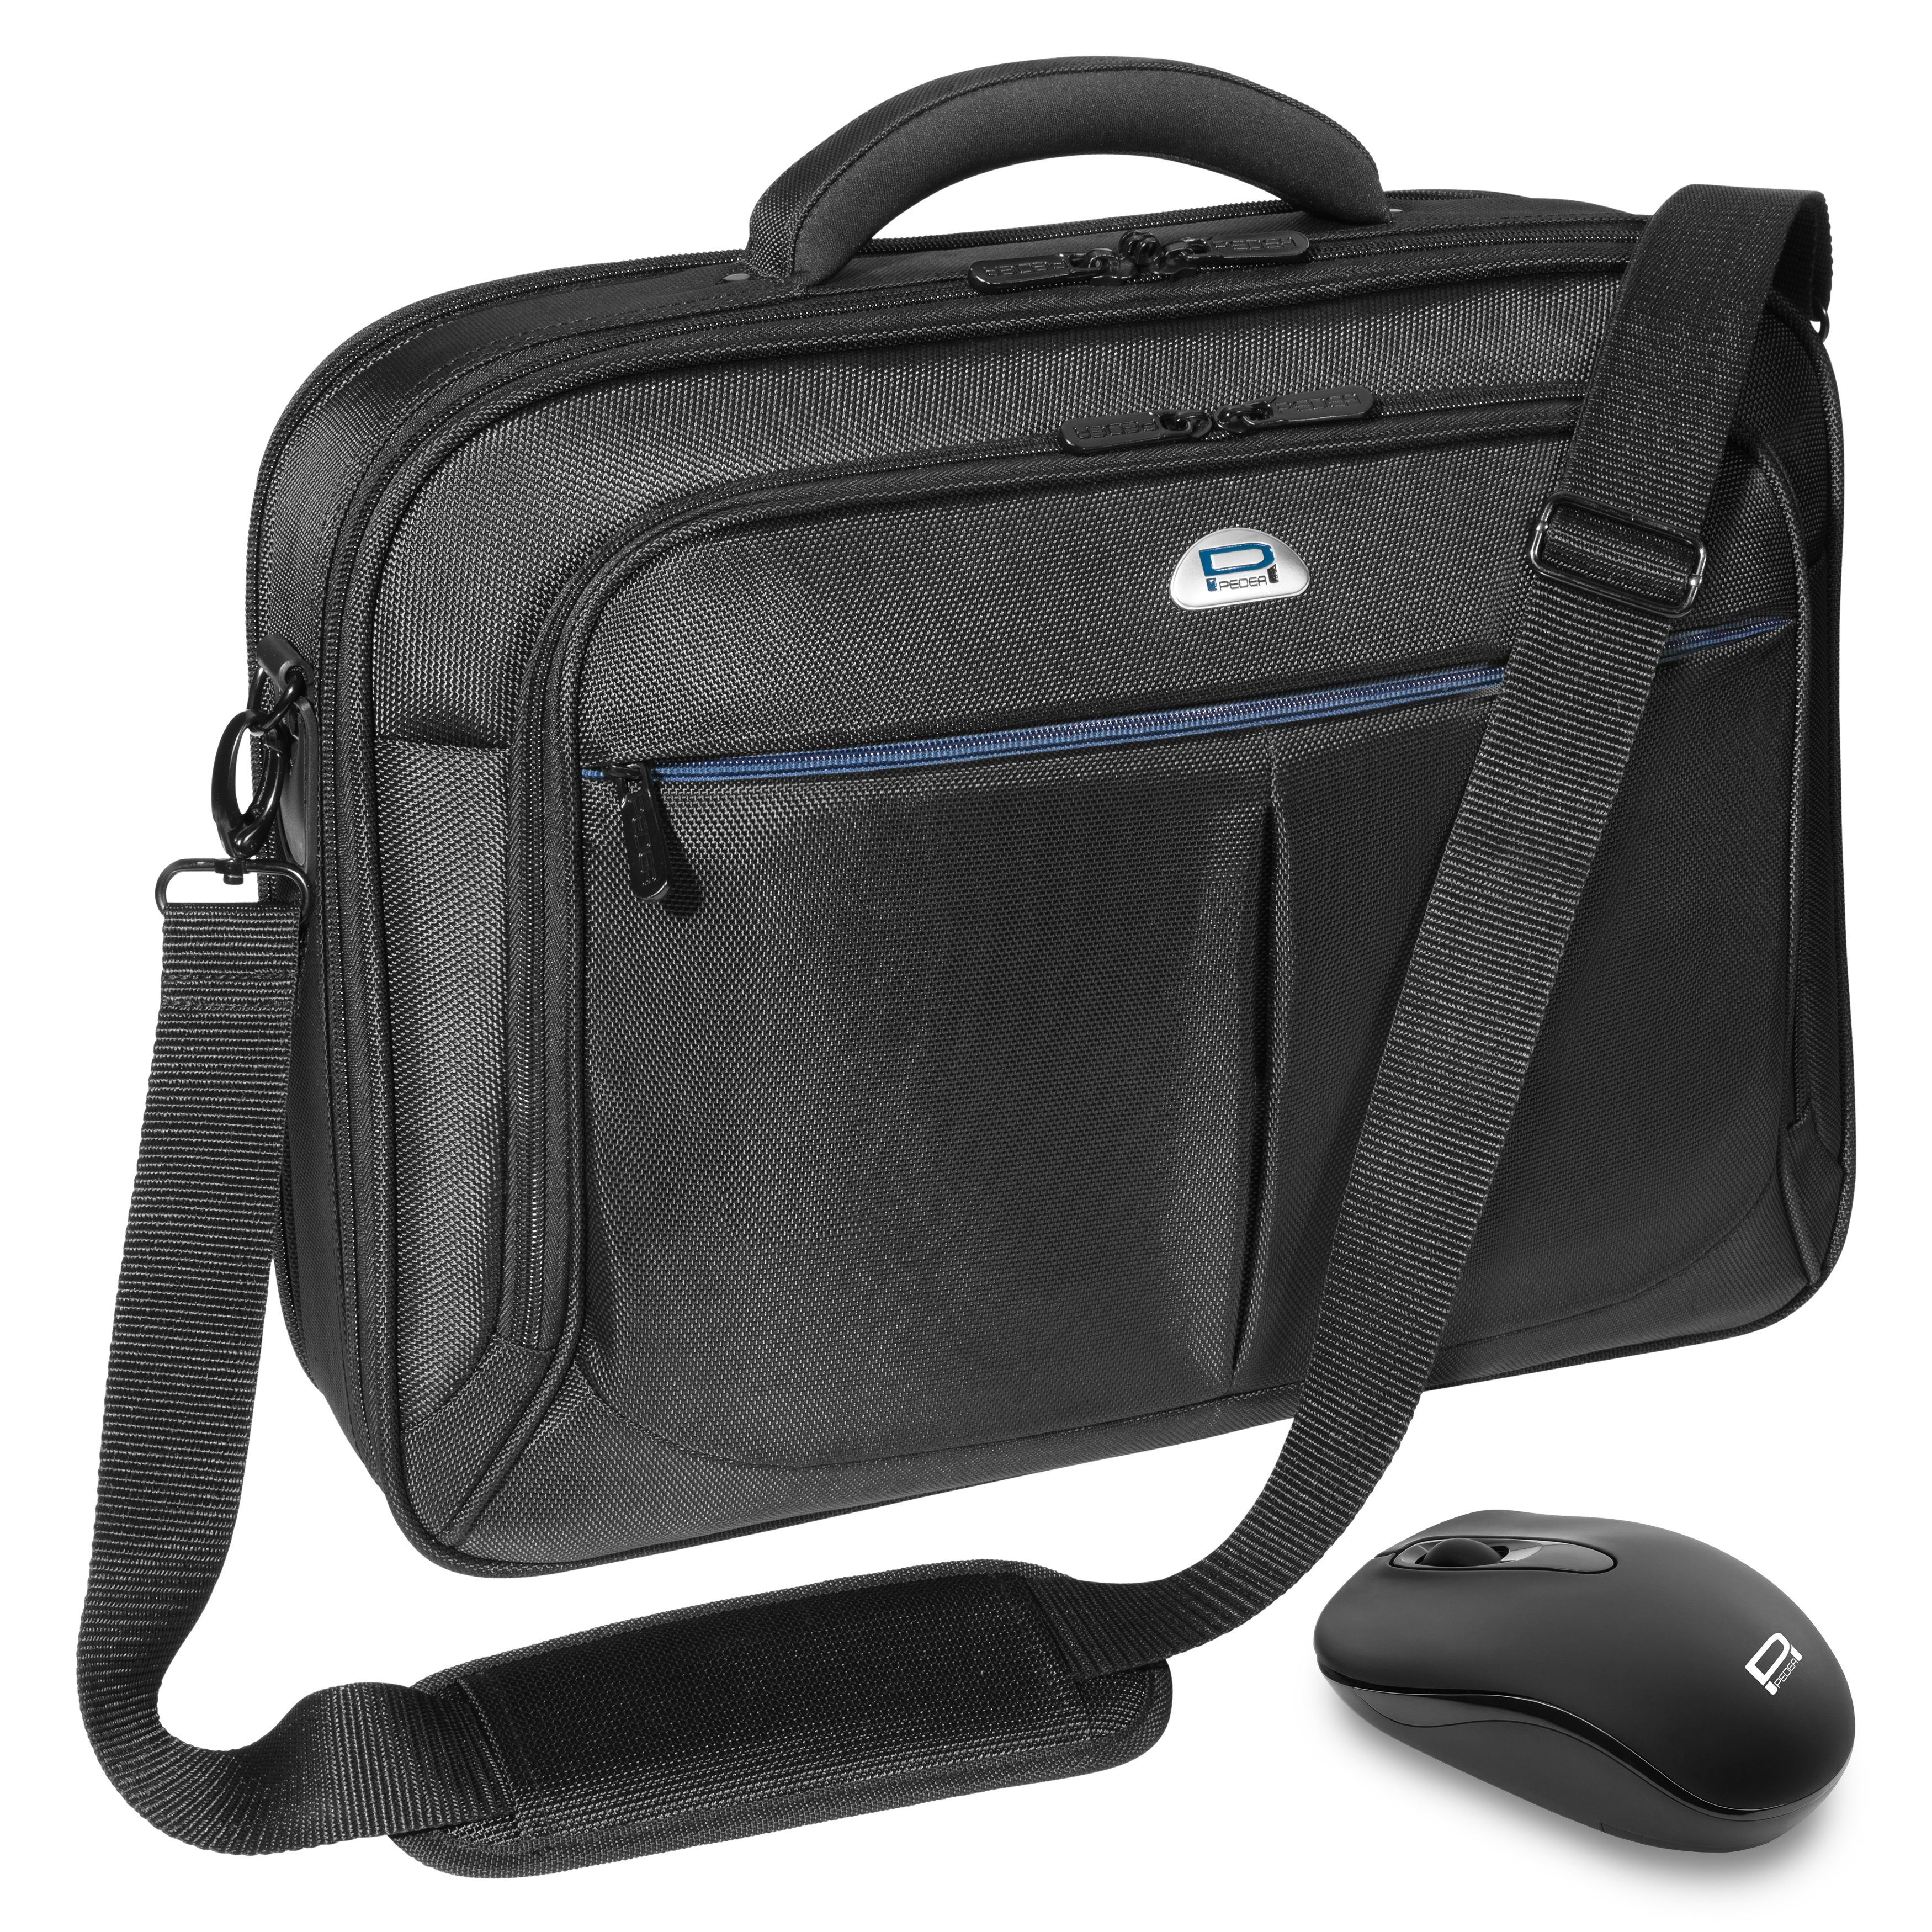 PEDEA Laptoptasche Premium (15,6 Zoll (39,6 cm), mit Funkmaus), stabiler Schutzrahmen, dicke Polsterung, wasserabweisende Materialien